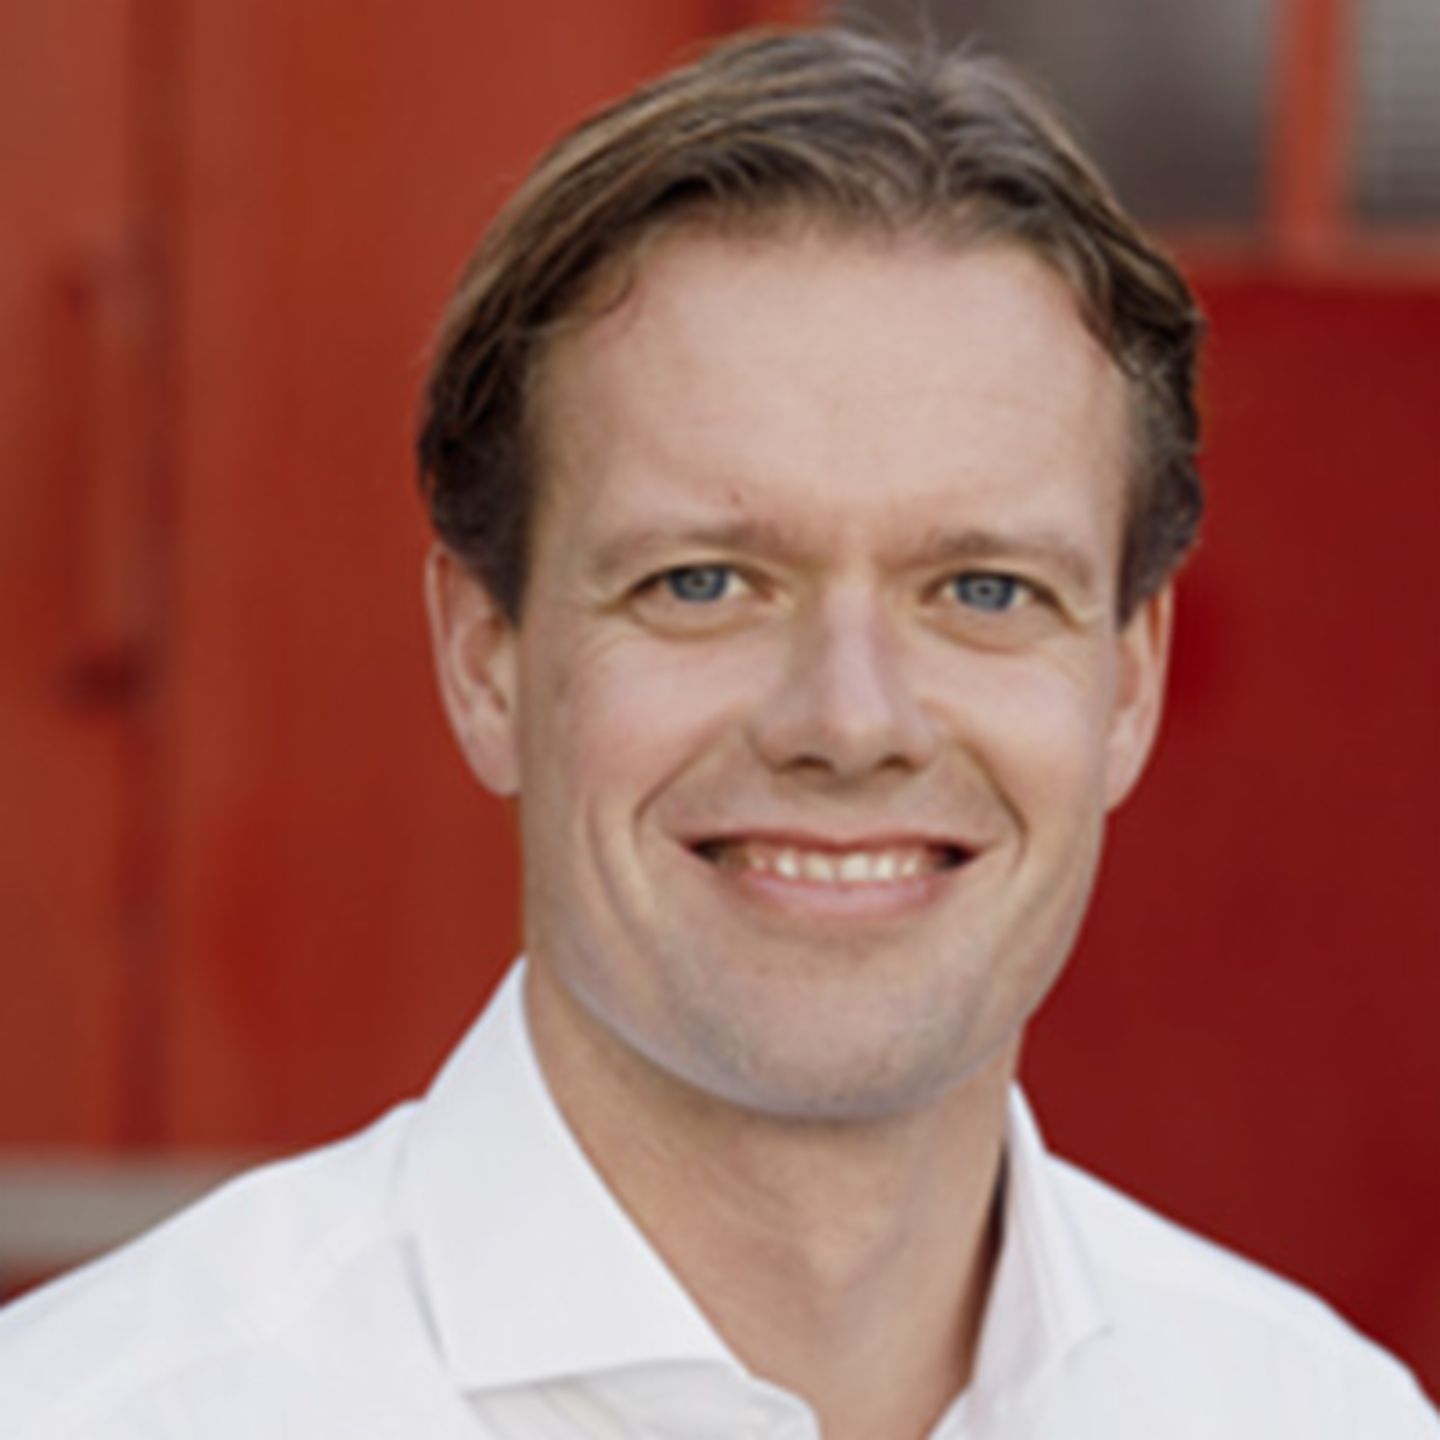 Strategija družbene odgovornosti skupine EOS: Sebastian Richter, direktor neprofitne družbe finlit foundation gGmbH